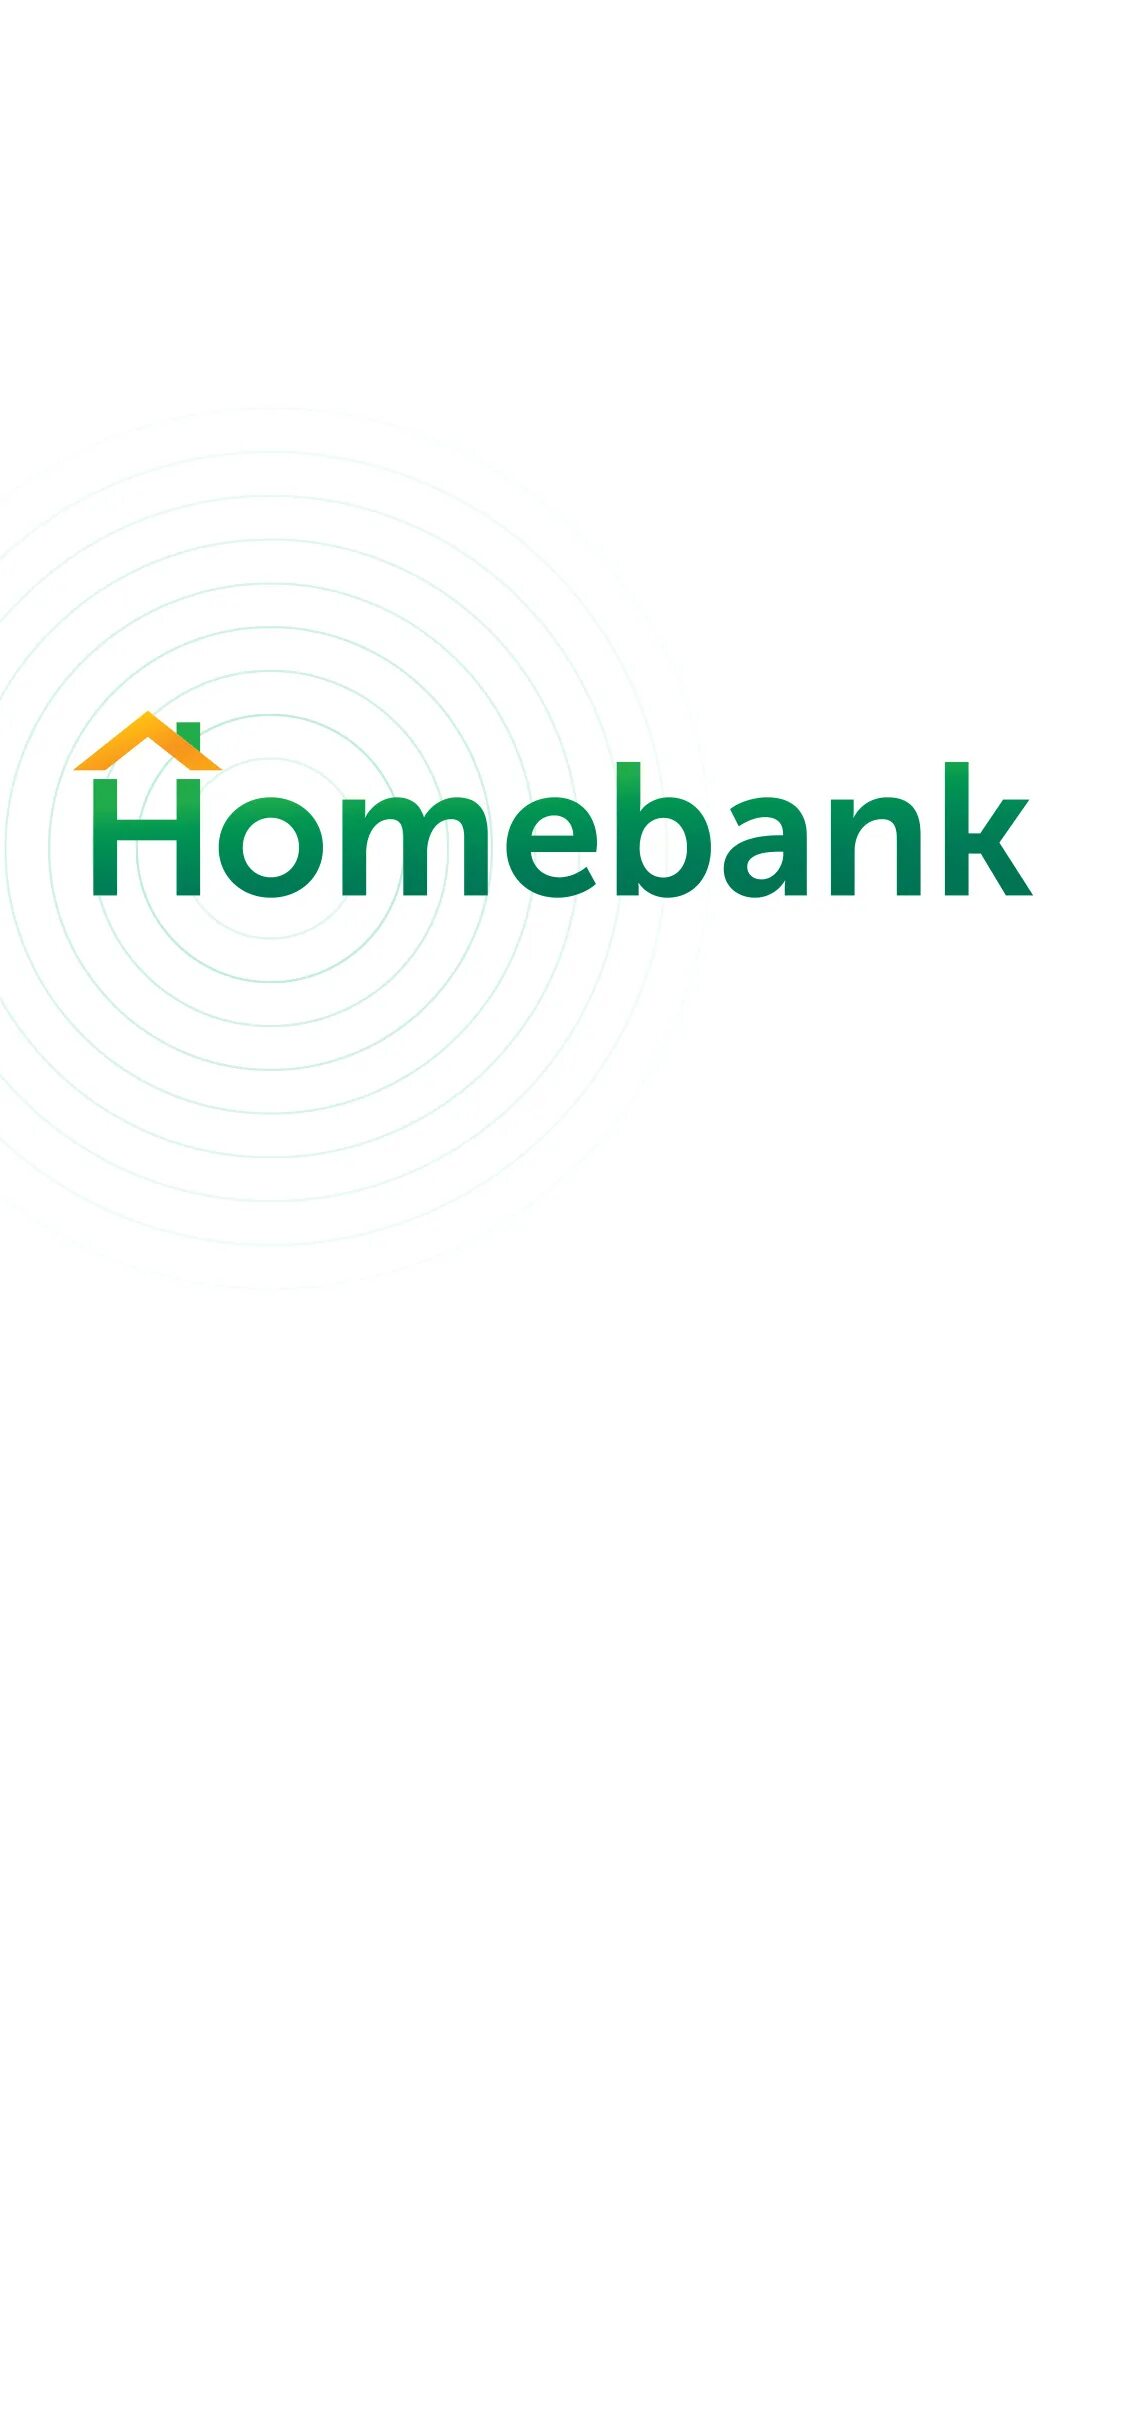 Народный кредитный банк. Homebank. Номе банк. Банк народный кредит. Логотип хоум банка.